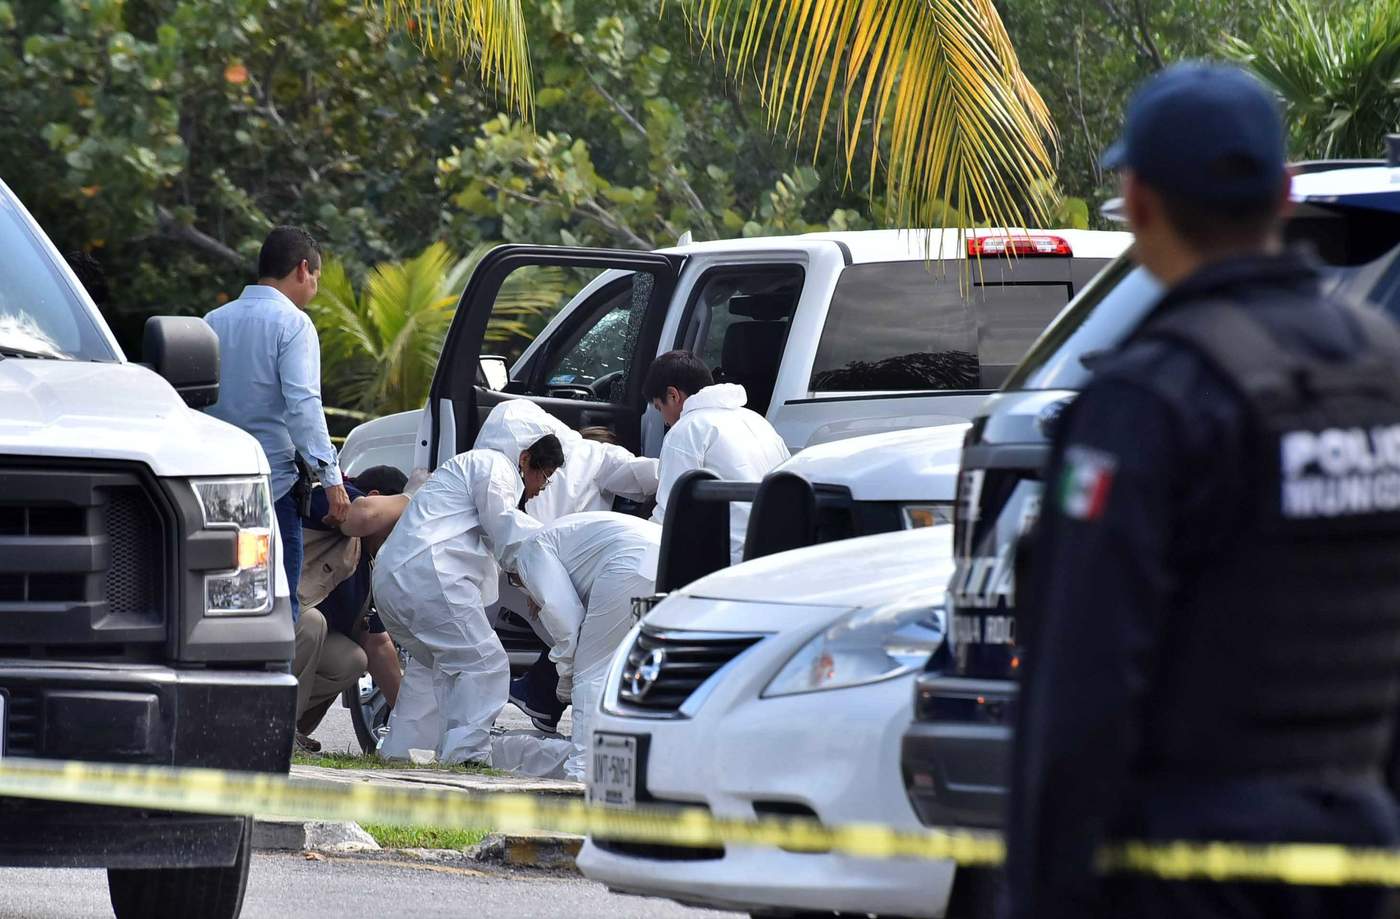 La dependencia refirió que el saldo es de dos personas muertas y dos lesionadas, hasta el momento, y que las víctimas viajaban en una camioneta con placas del estado de Jalisco. (ARCHIVO)